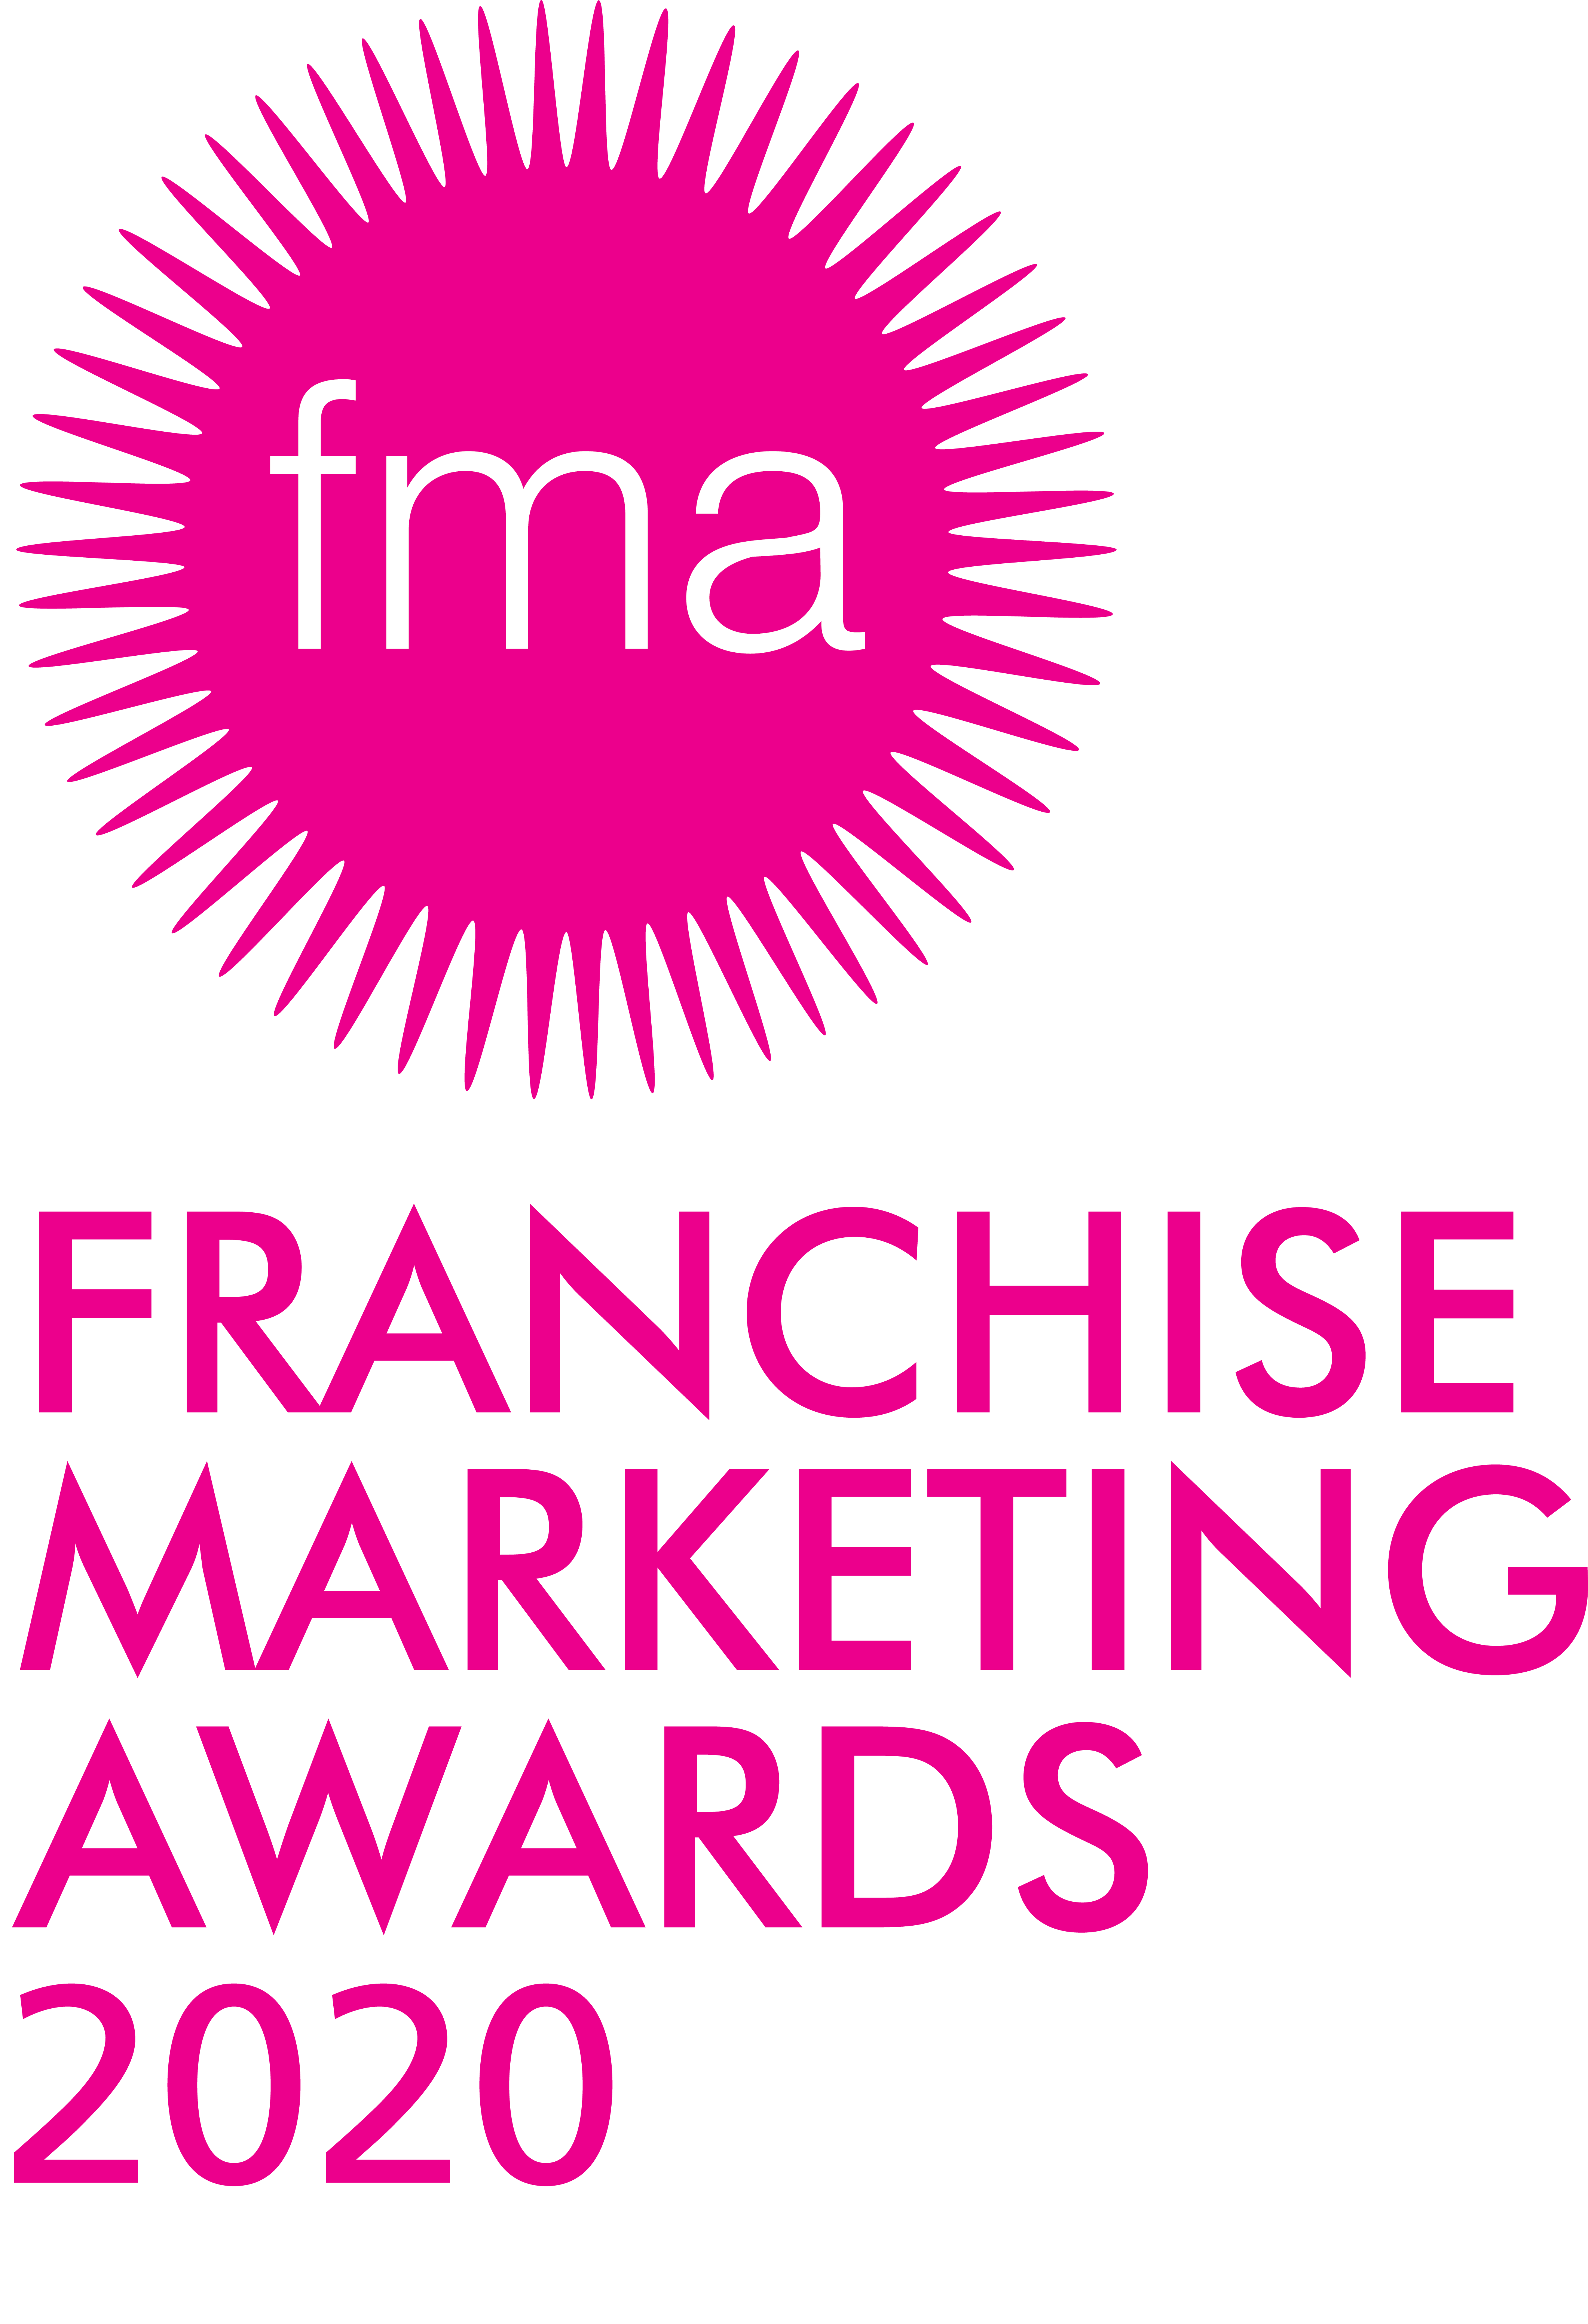 Franchise Marketing Awards 2020